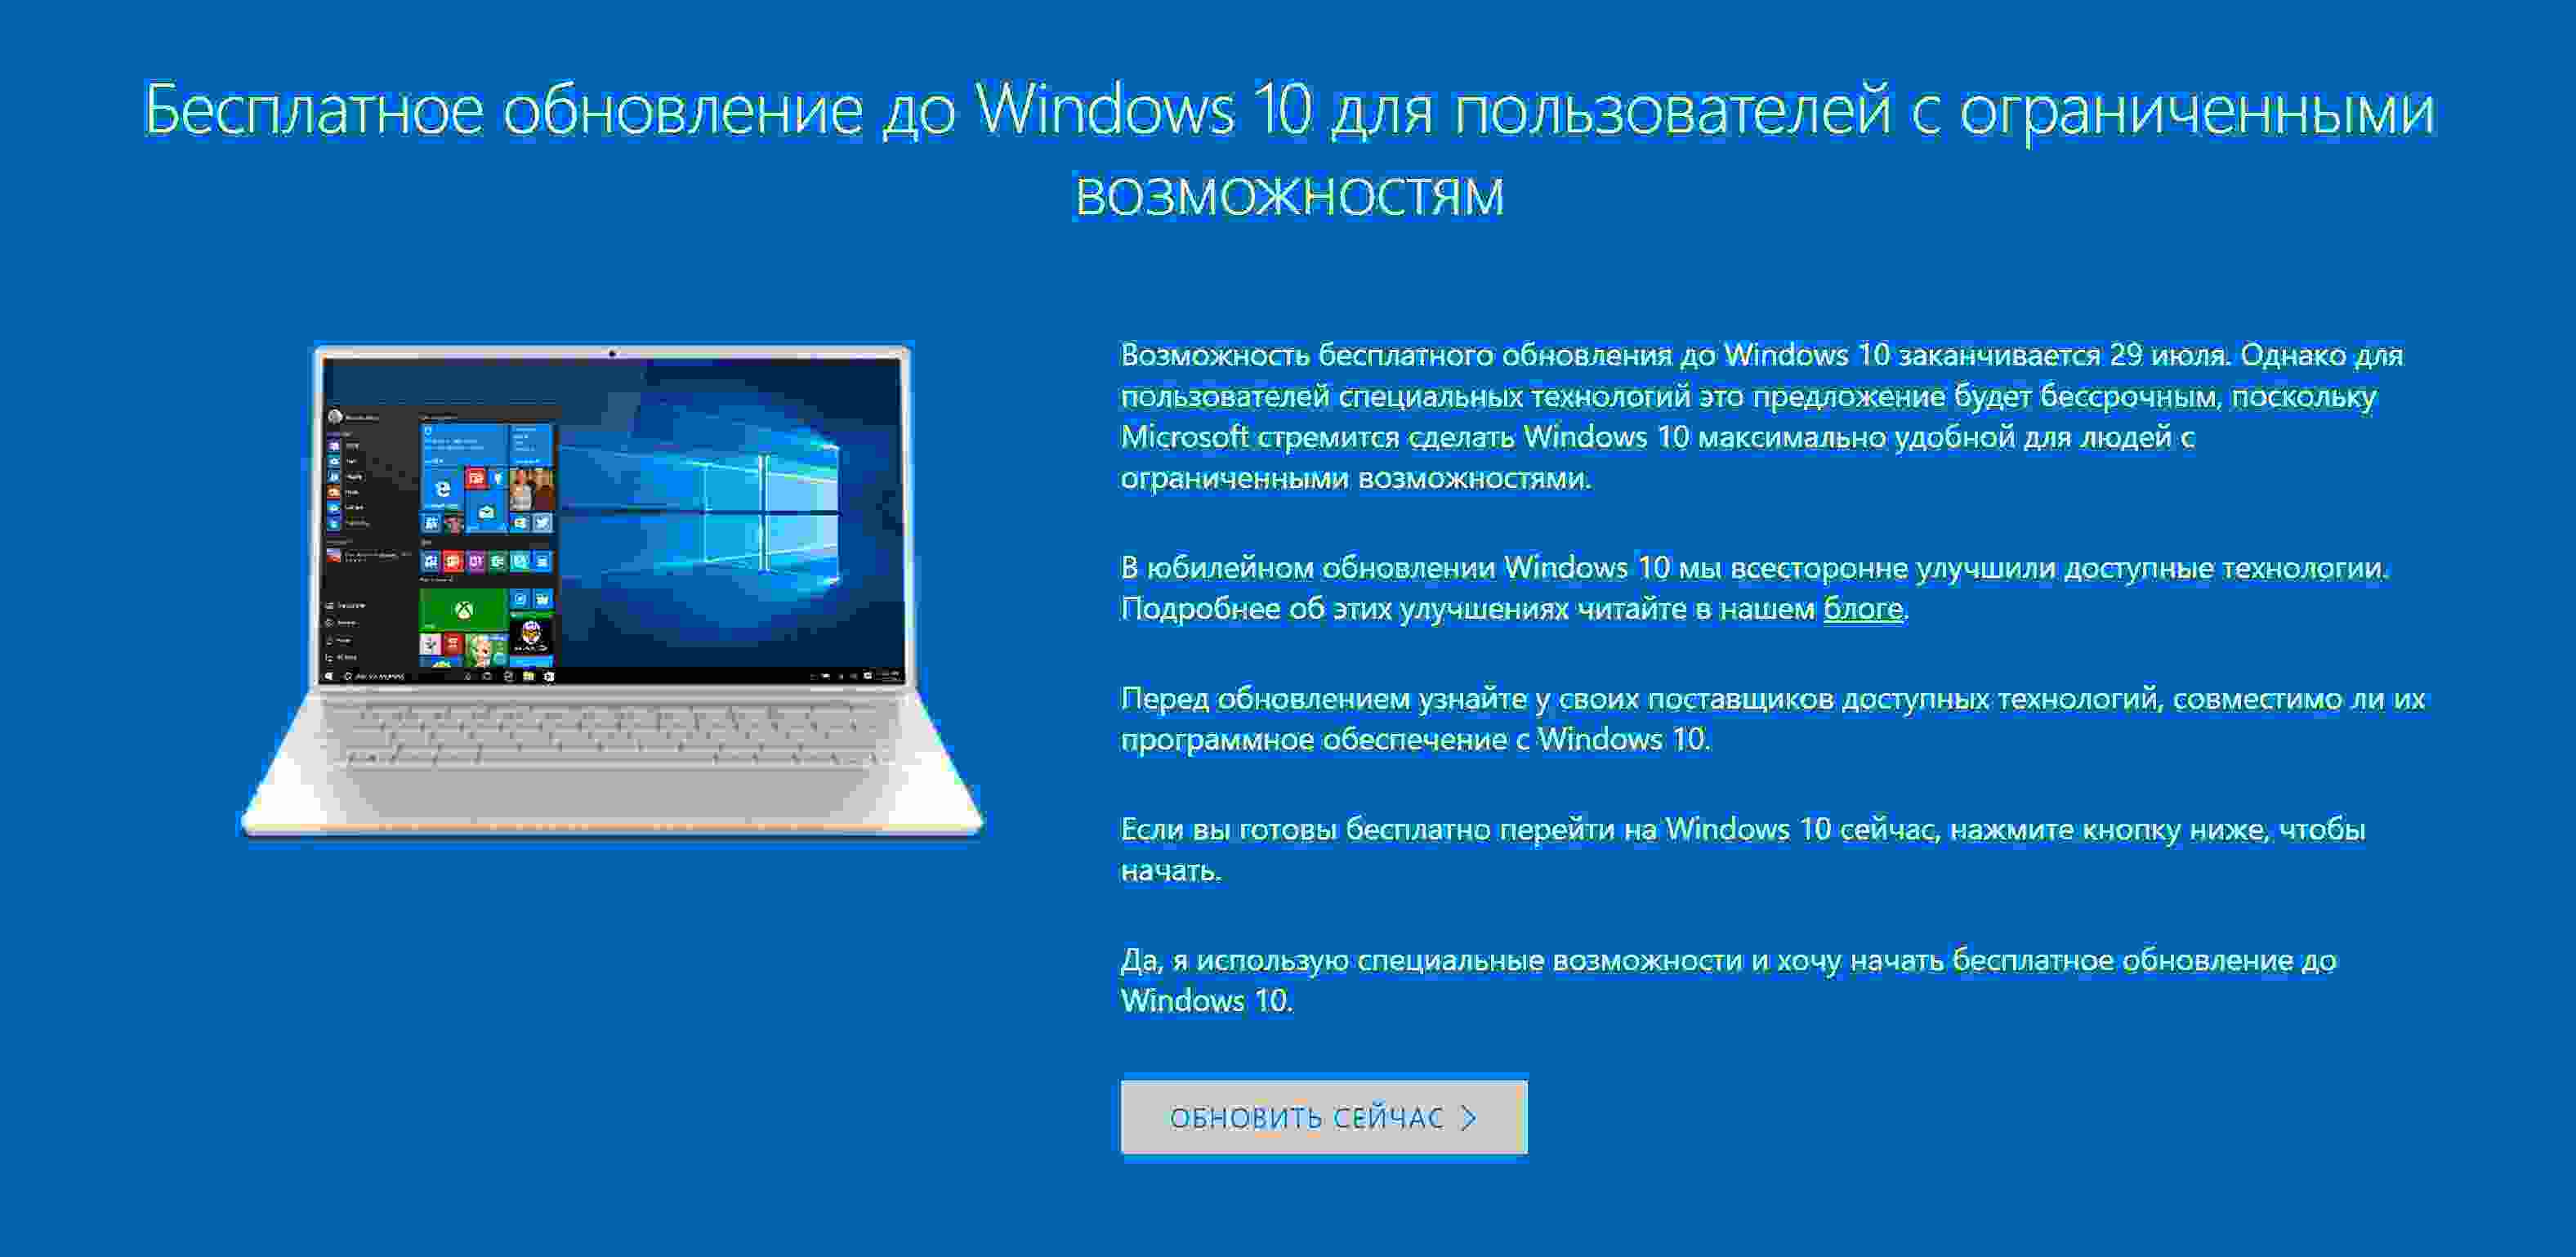 Windows 10 всё ещё бесплатная